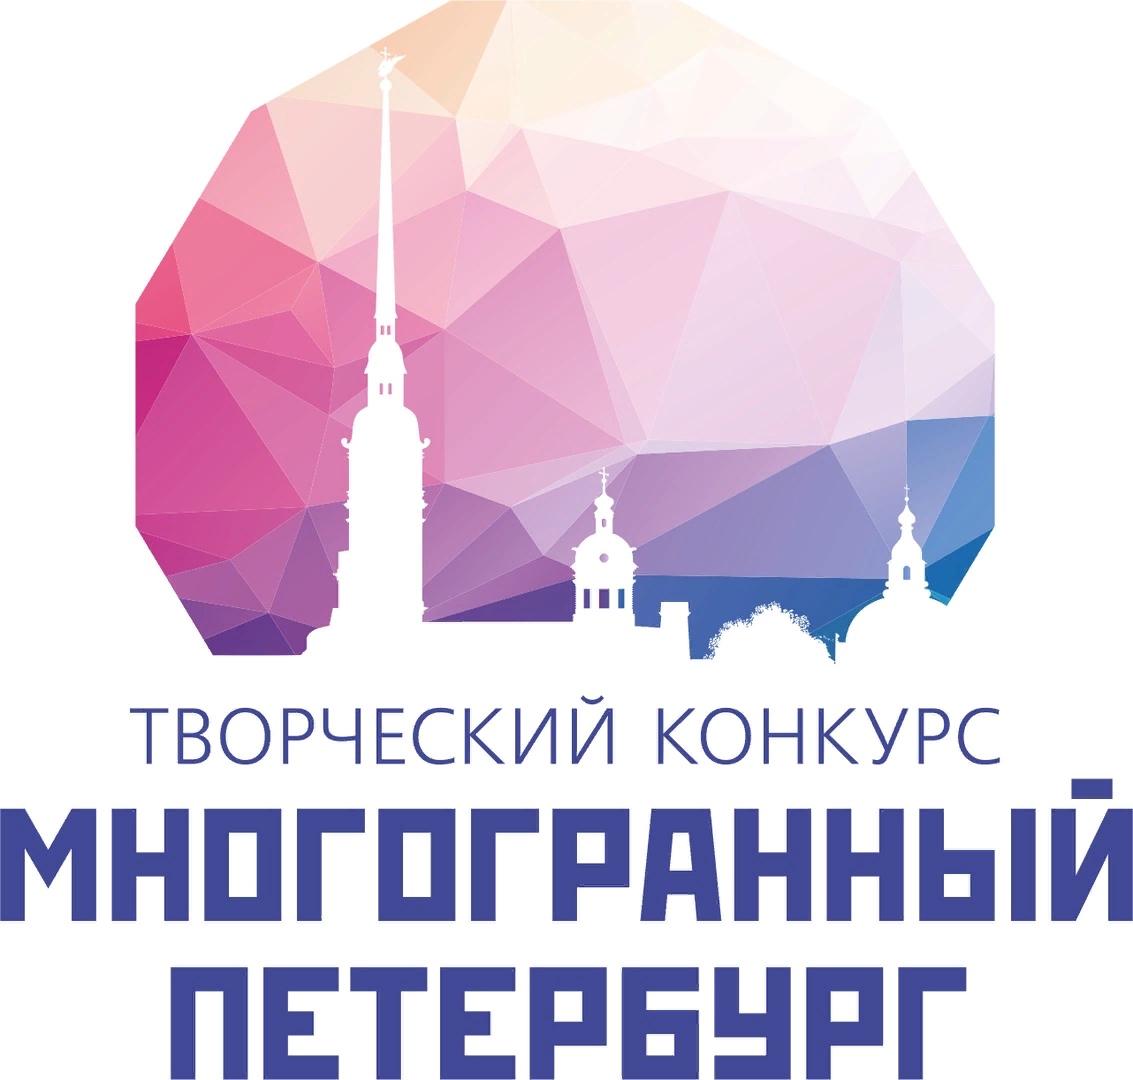 Комитет по межнациональным отношениям и реализации миграционной политики в Санкт-Петербурге впервые проводит Творческий конкурс «Многогранный Петербург» в дистанционном формате.